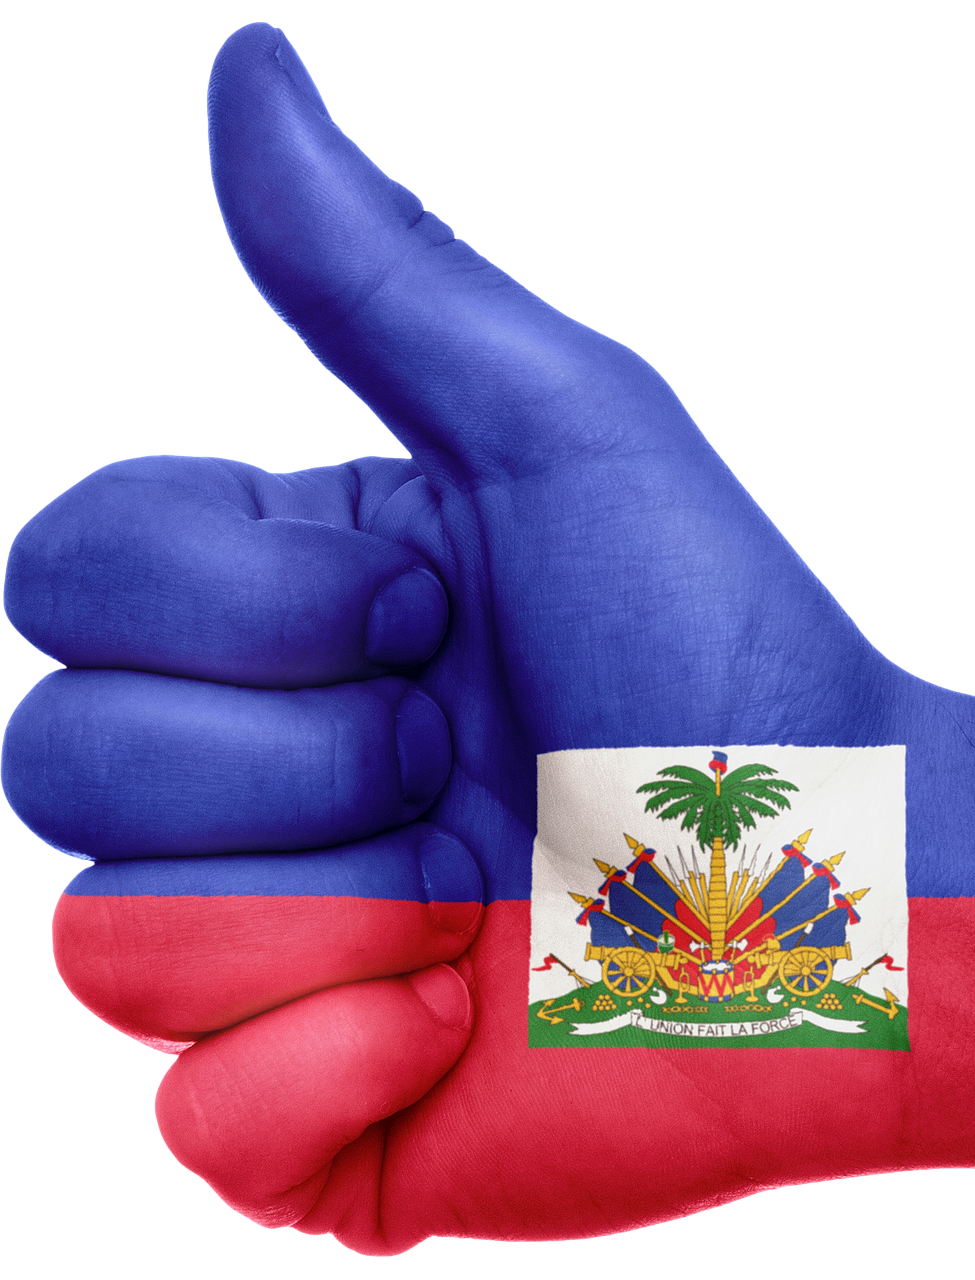 Haiti, Vėliava, Ranka, Nacionalinis, Pirštai, Patriotinis, Patriotizmas, Karibai, Haitis, Gestas